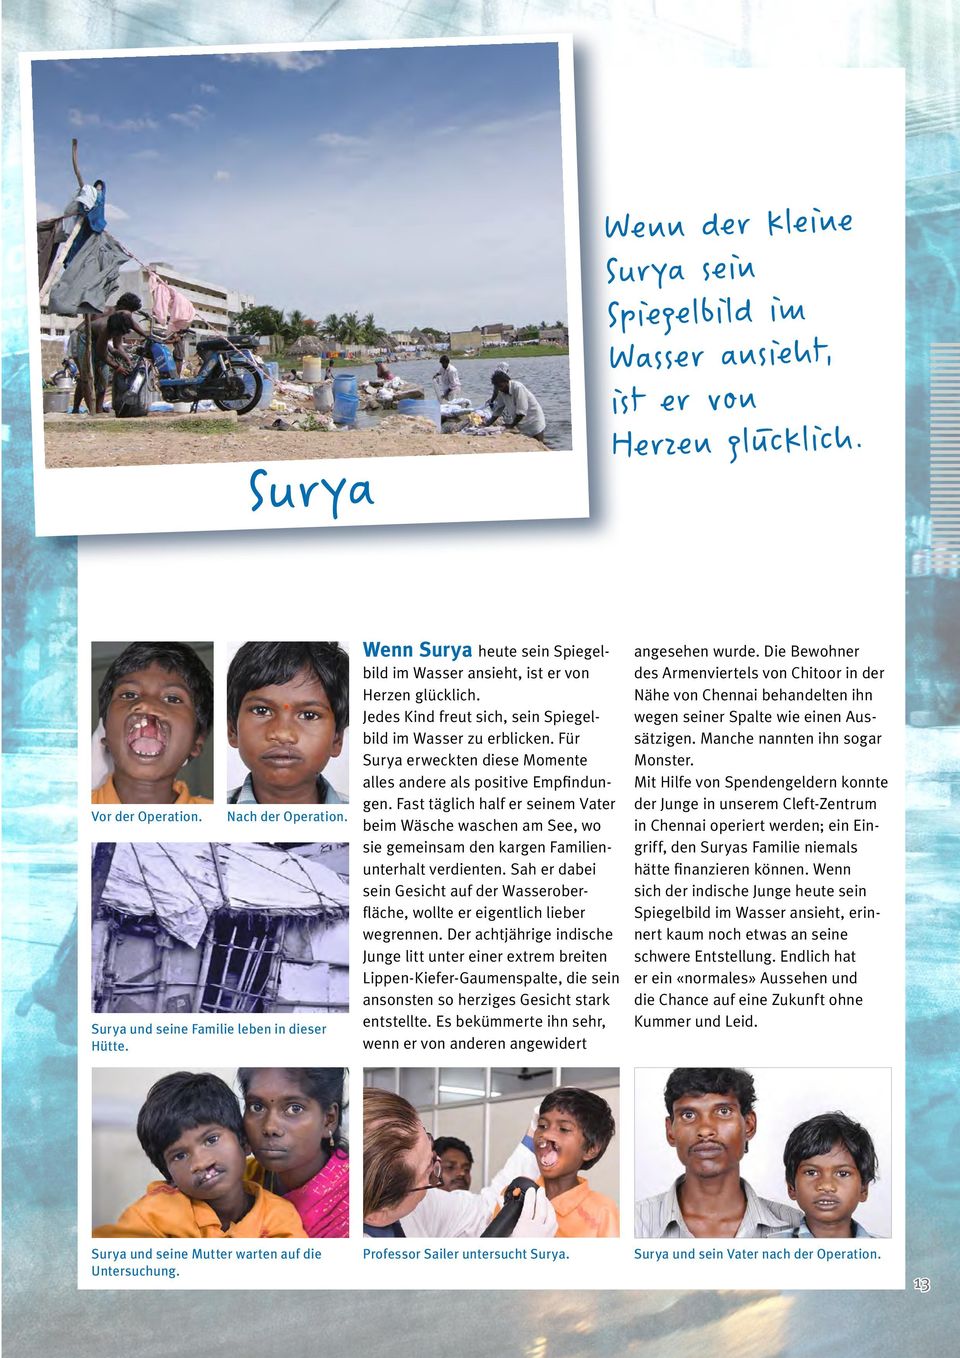 Für Surya erweckten diese Momente alles andere als positive Empfindungen. Fast täglich half er seinem Vater beim Wäsche waschen am See, wo sie gemeinsam den kargen Familienunterhalt verdienten.